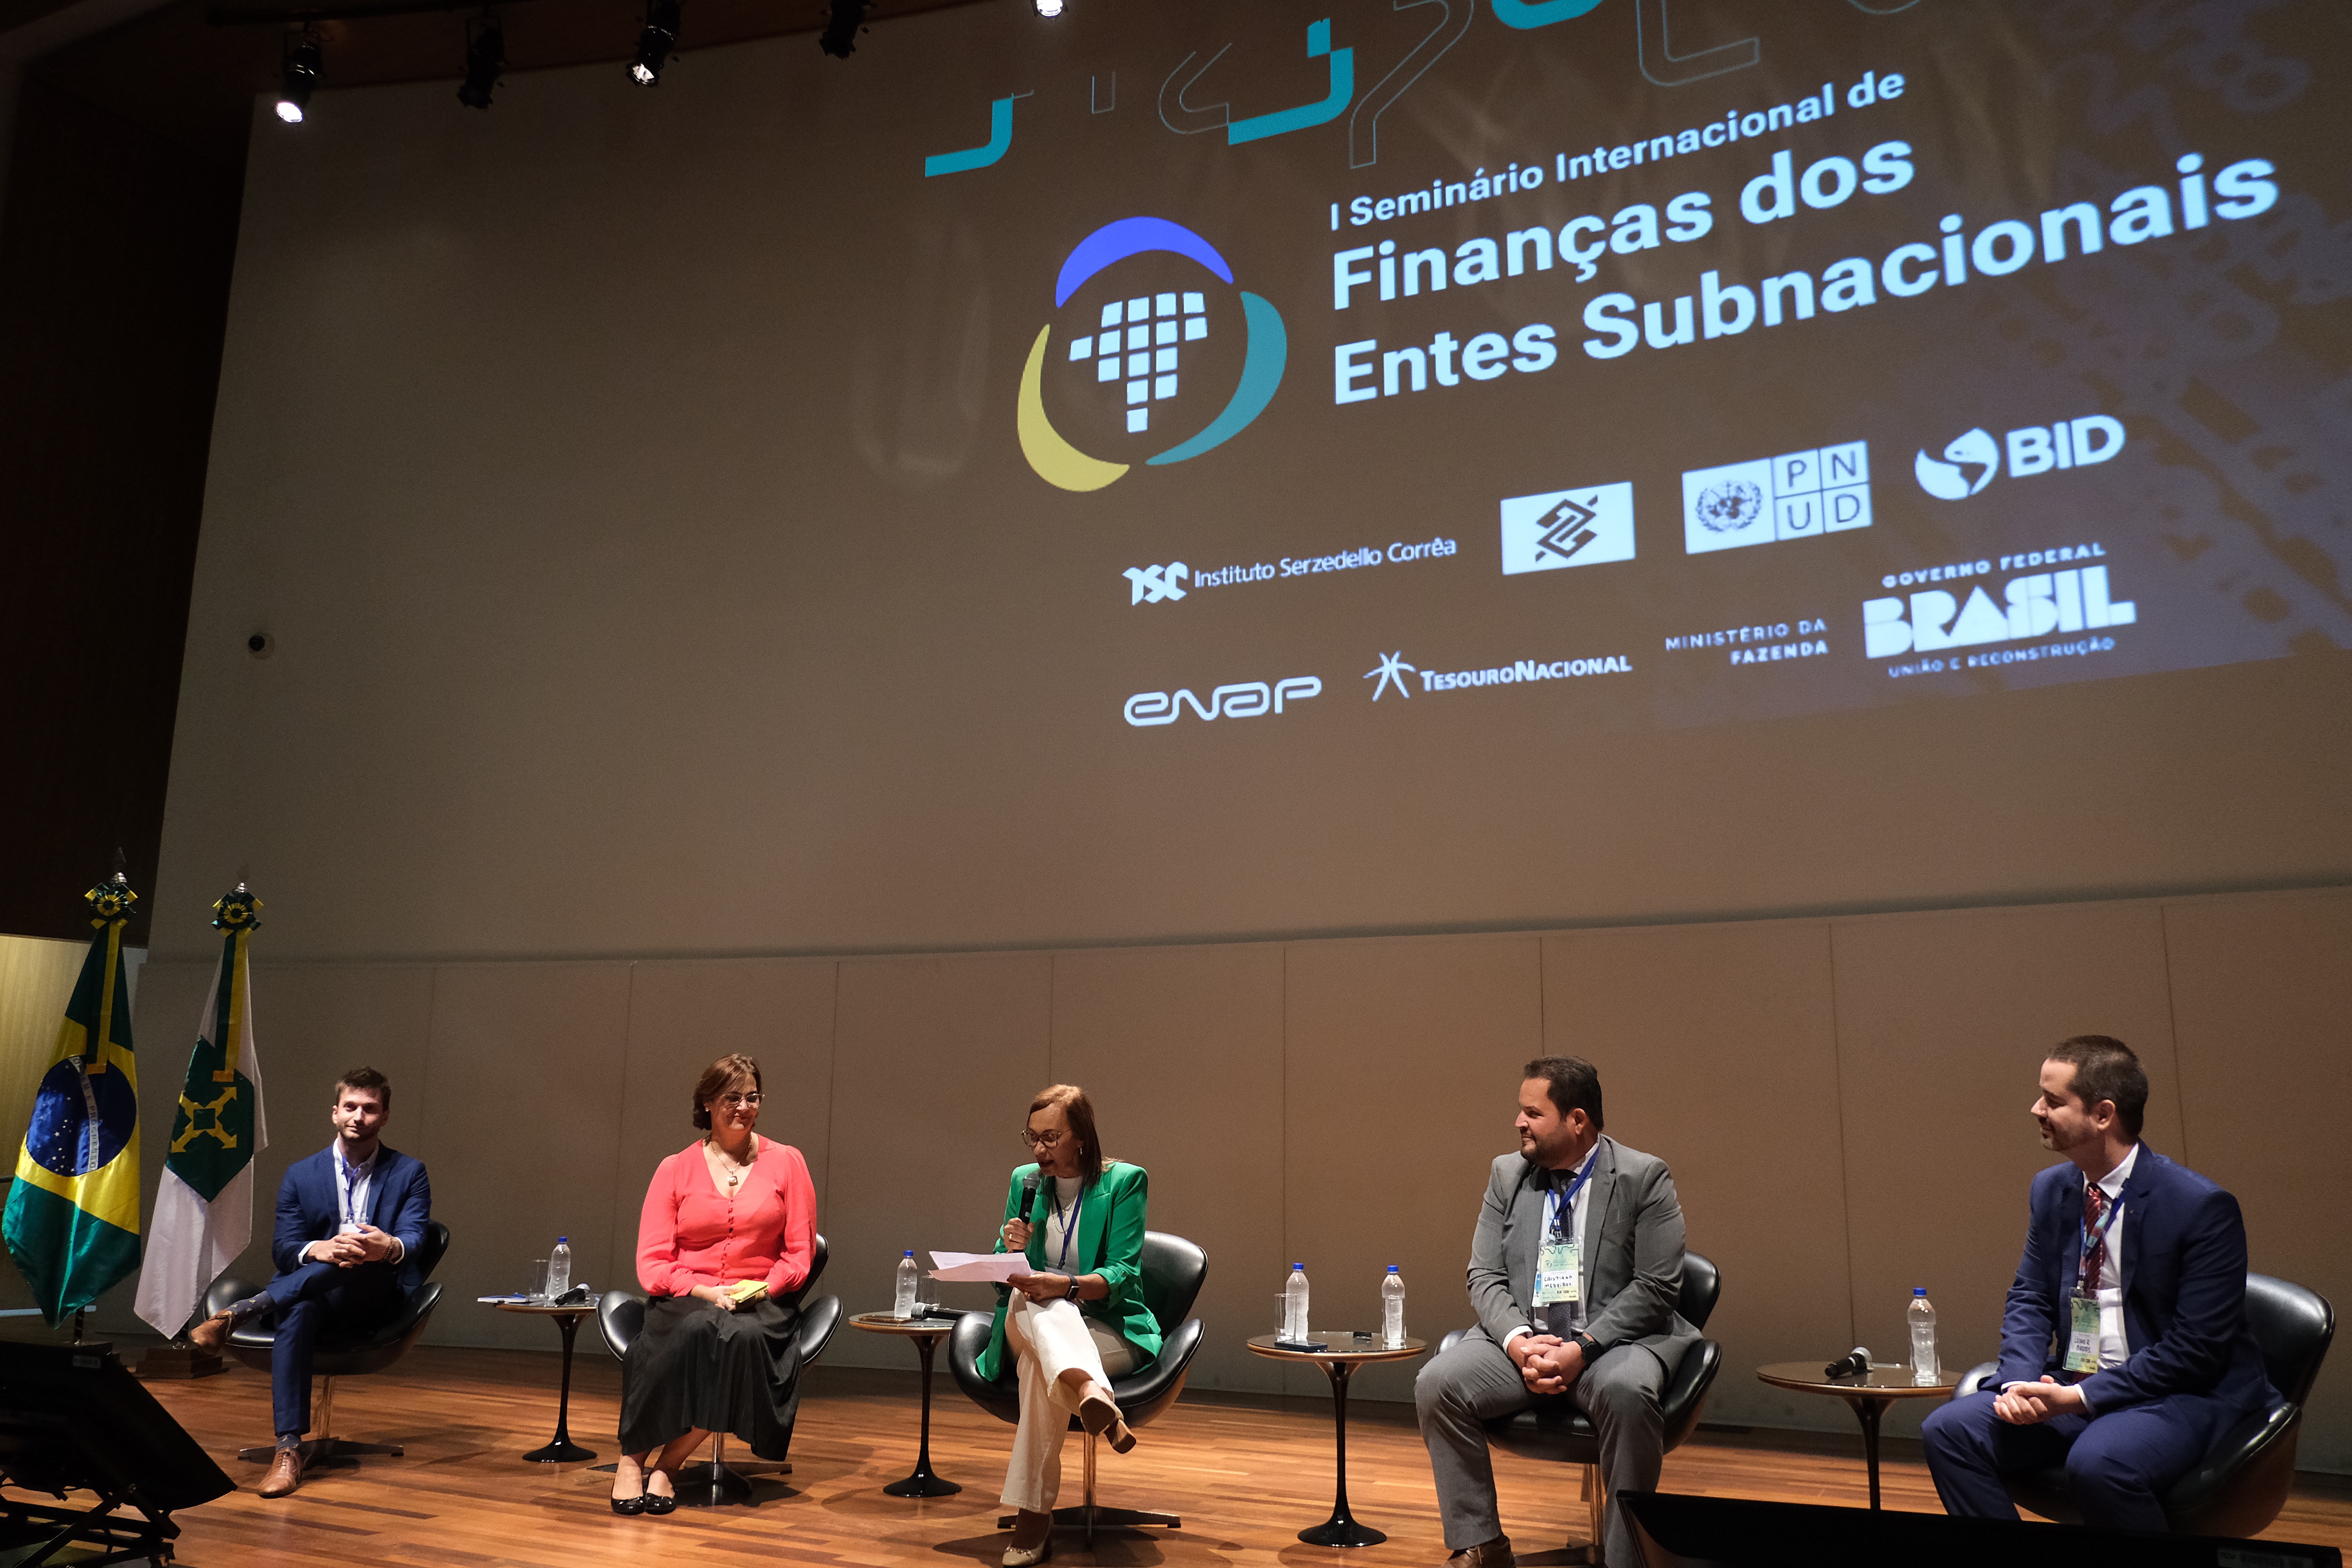 1º Seminário Internacional de Finanças dos Entes Subnacionais - Foto 5